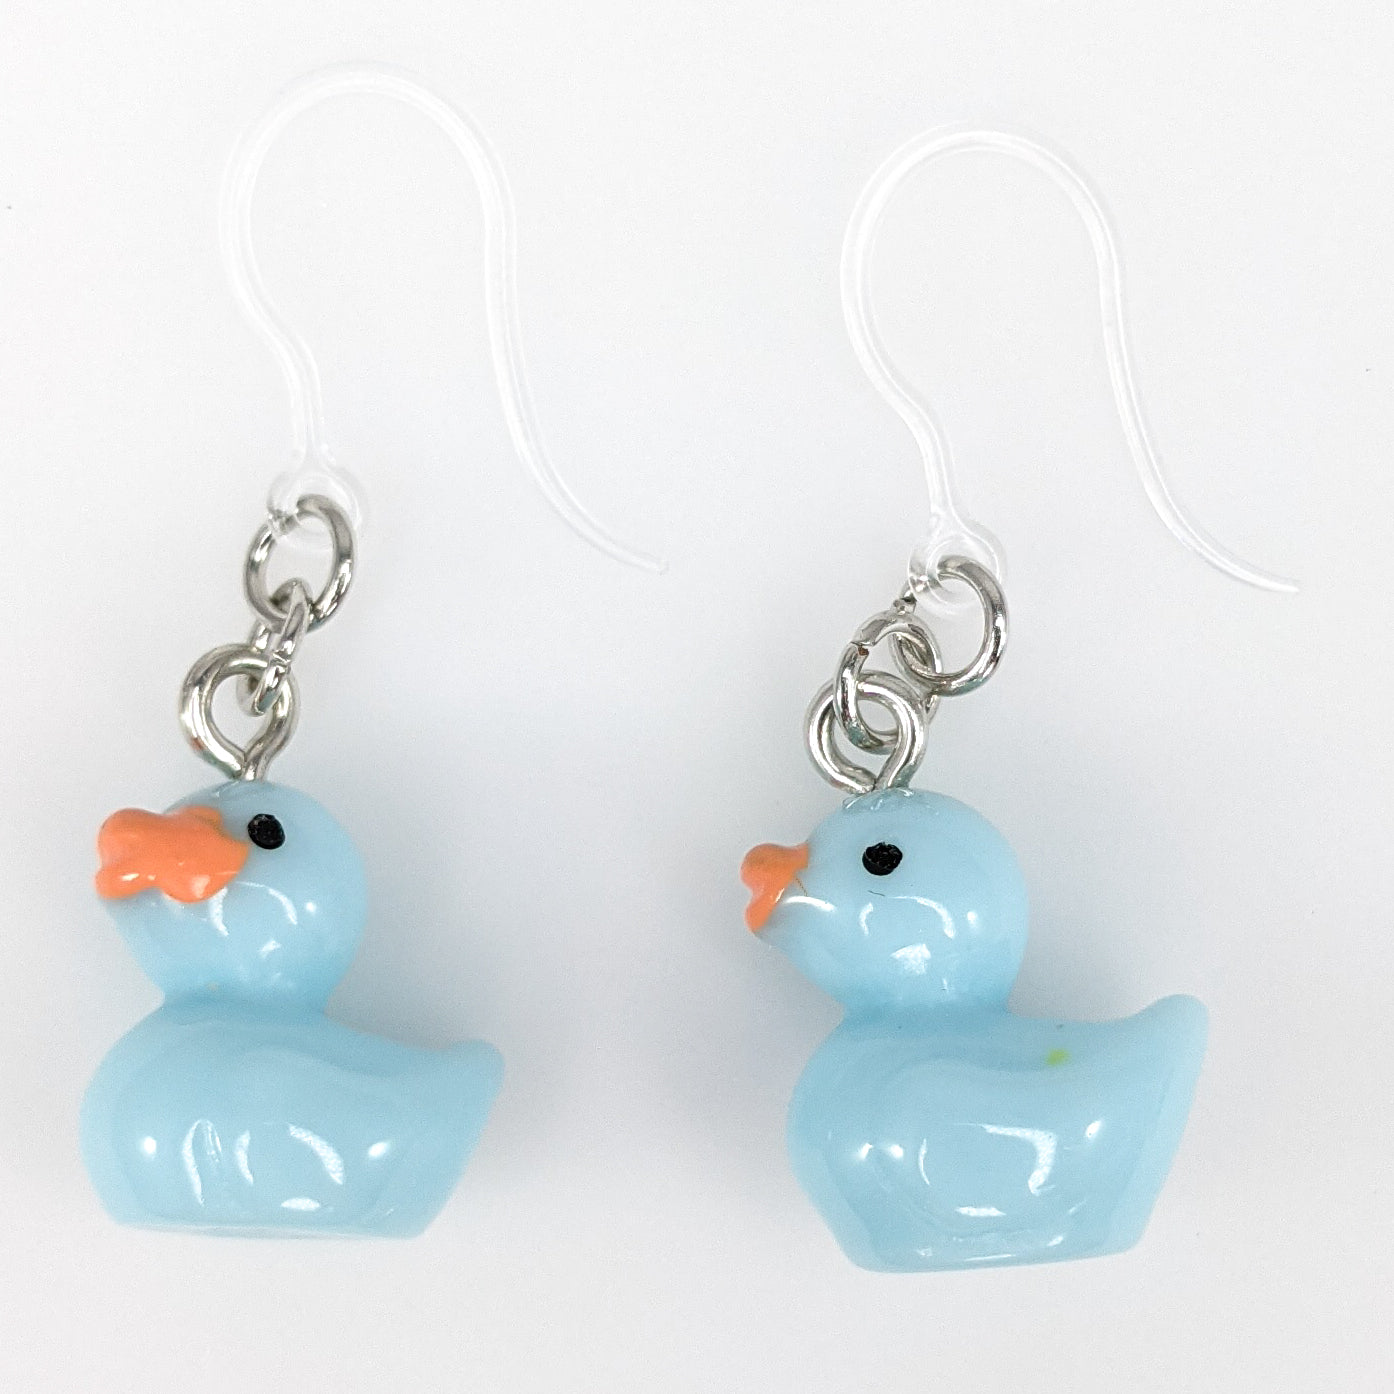 Rubber Duckie Earrings (Dangles) - blue